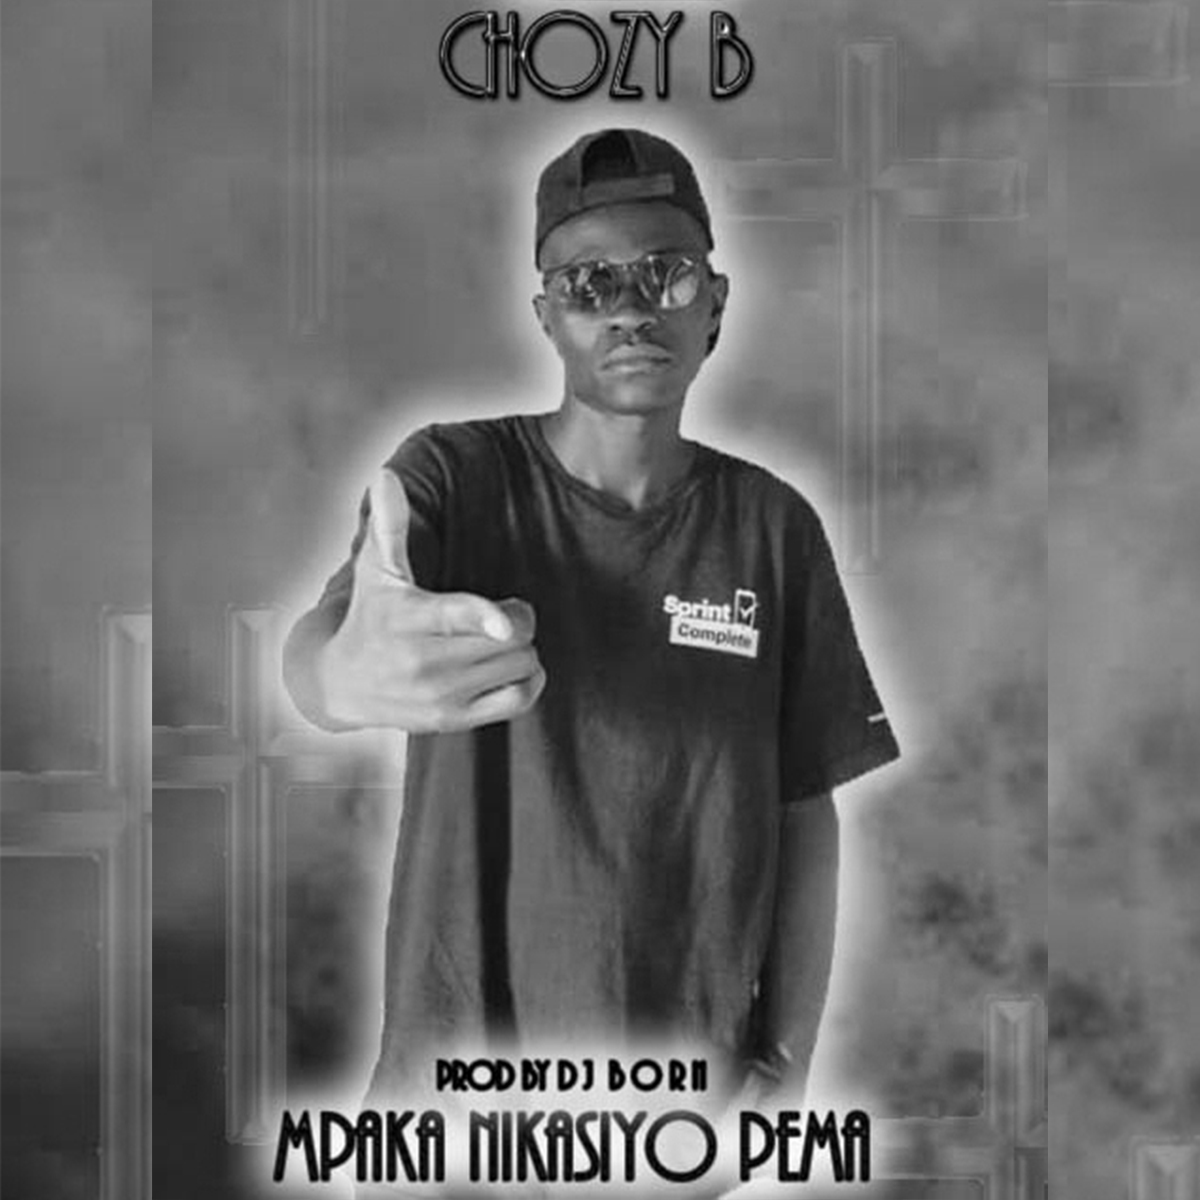 Chozy B - Mpaka Nikasiyo Pema (Prod. DJ Born)